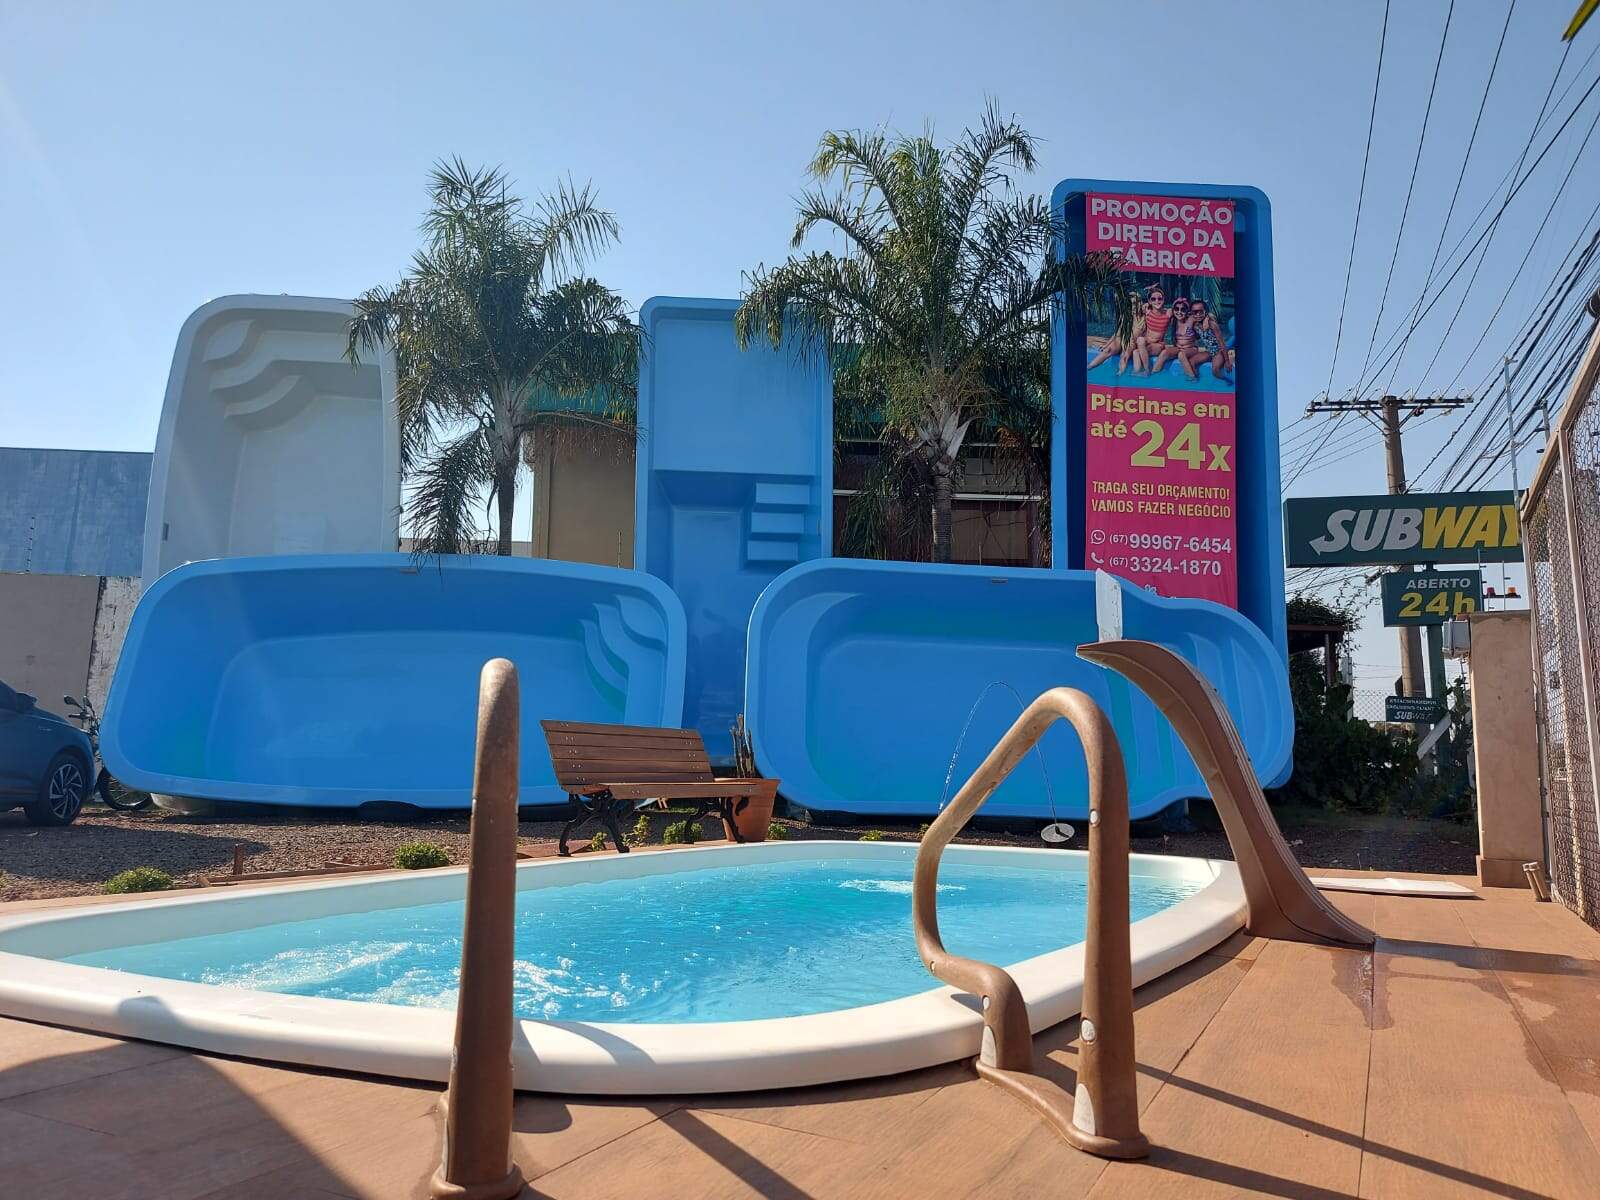 whatsapp image 2022 02 16 at 17.56.22 1 - Loja de piscinas se destaca pela segurança de seus equipamentos em Campo Grande